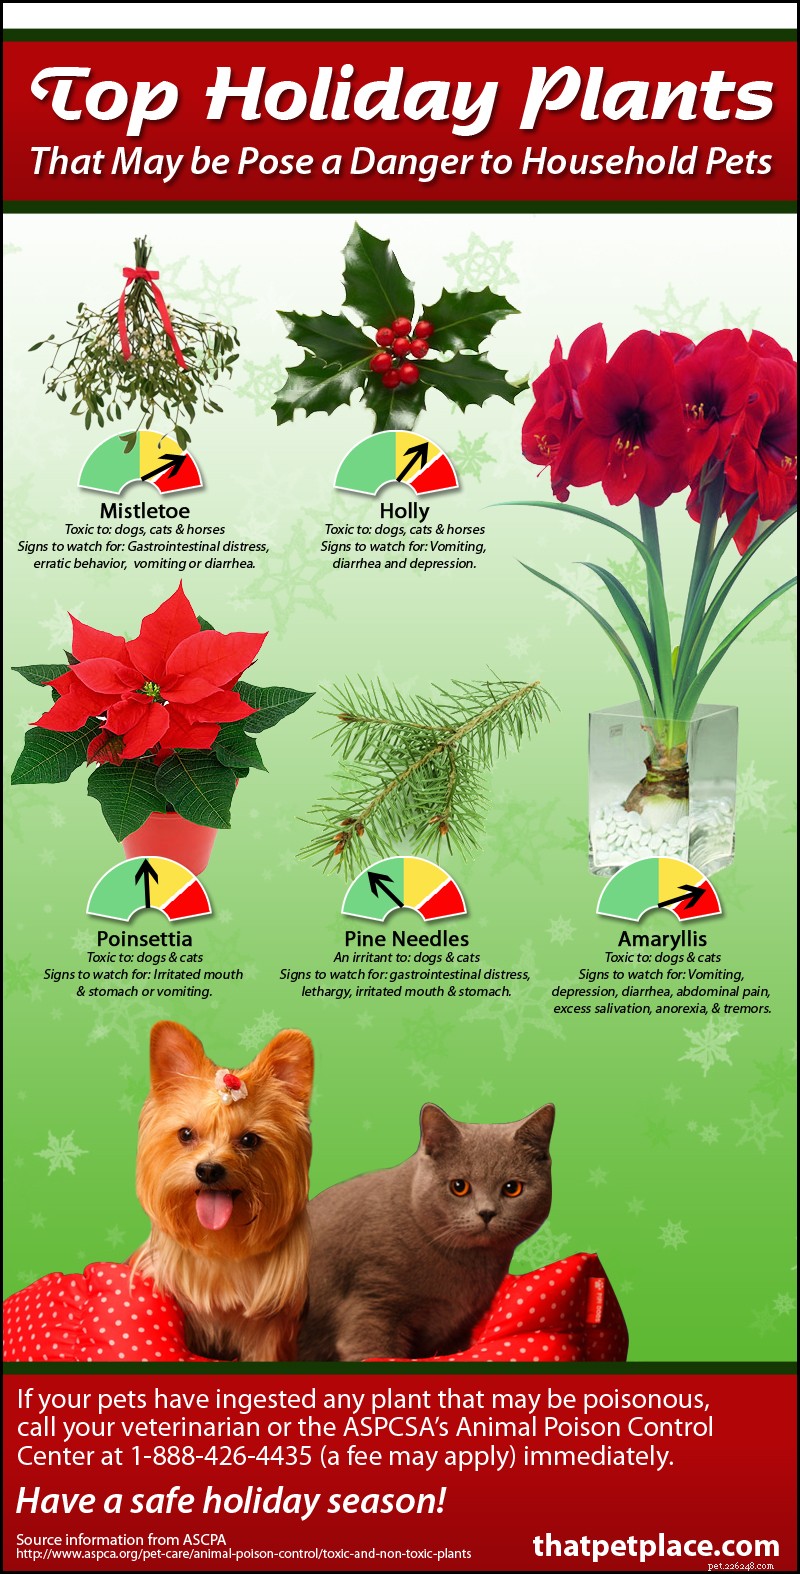 Pericoli durante le vacanze:piante velenose popolari durante le festività natalizie